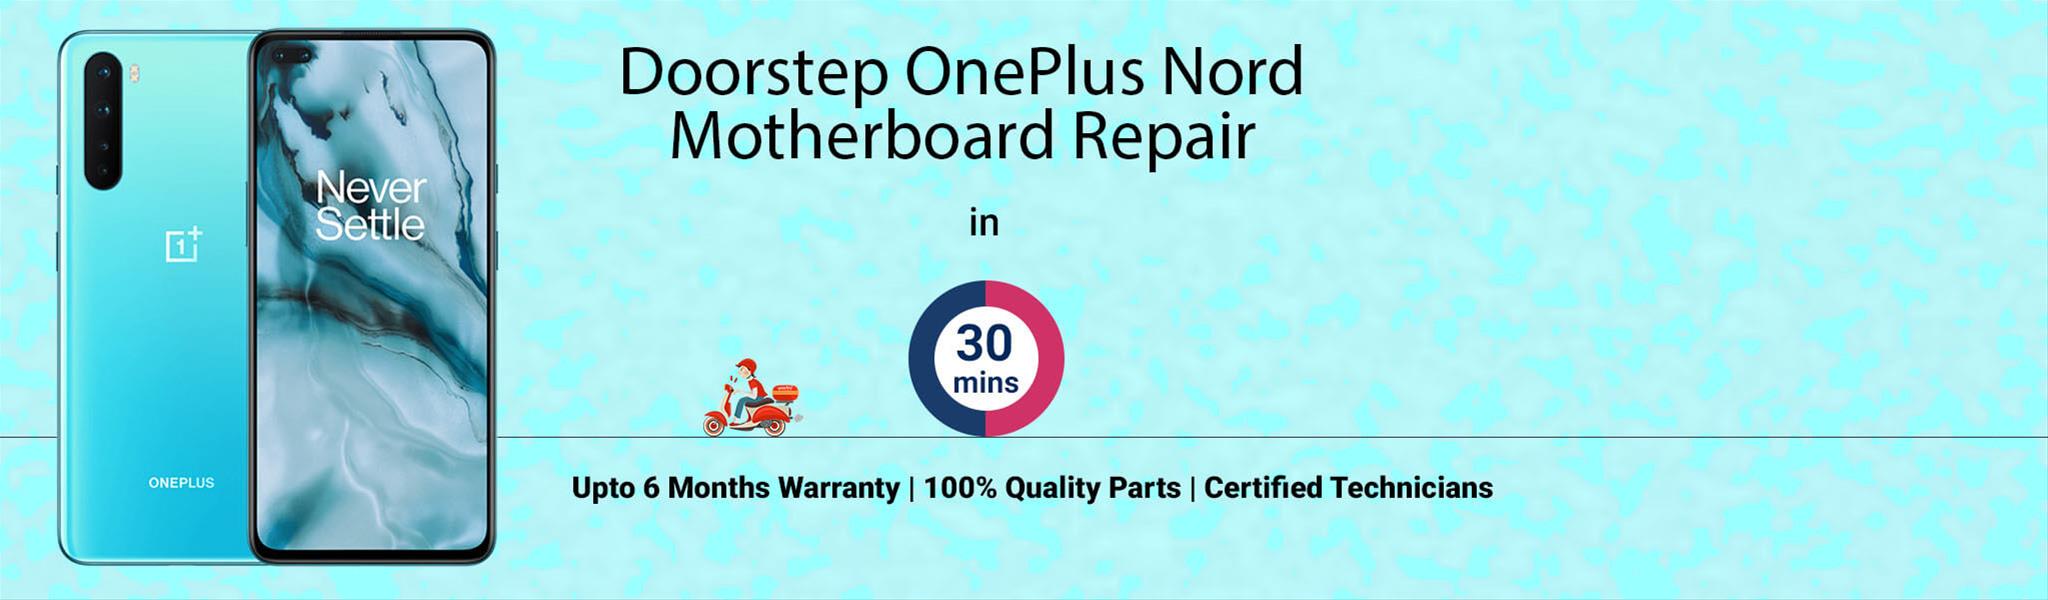 oneplus-nord-motherboard-repair.jpg